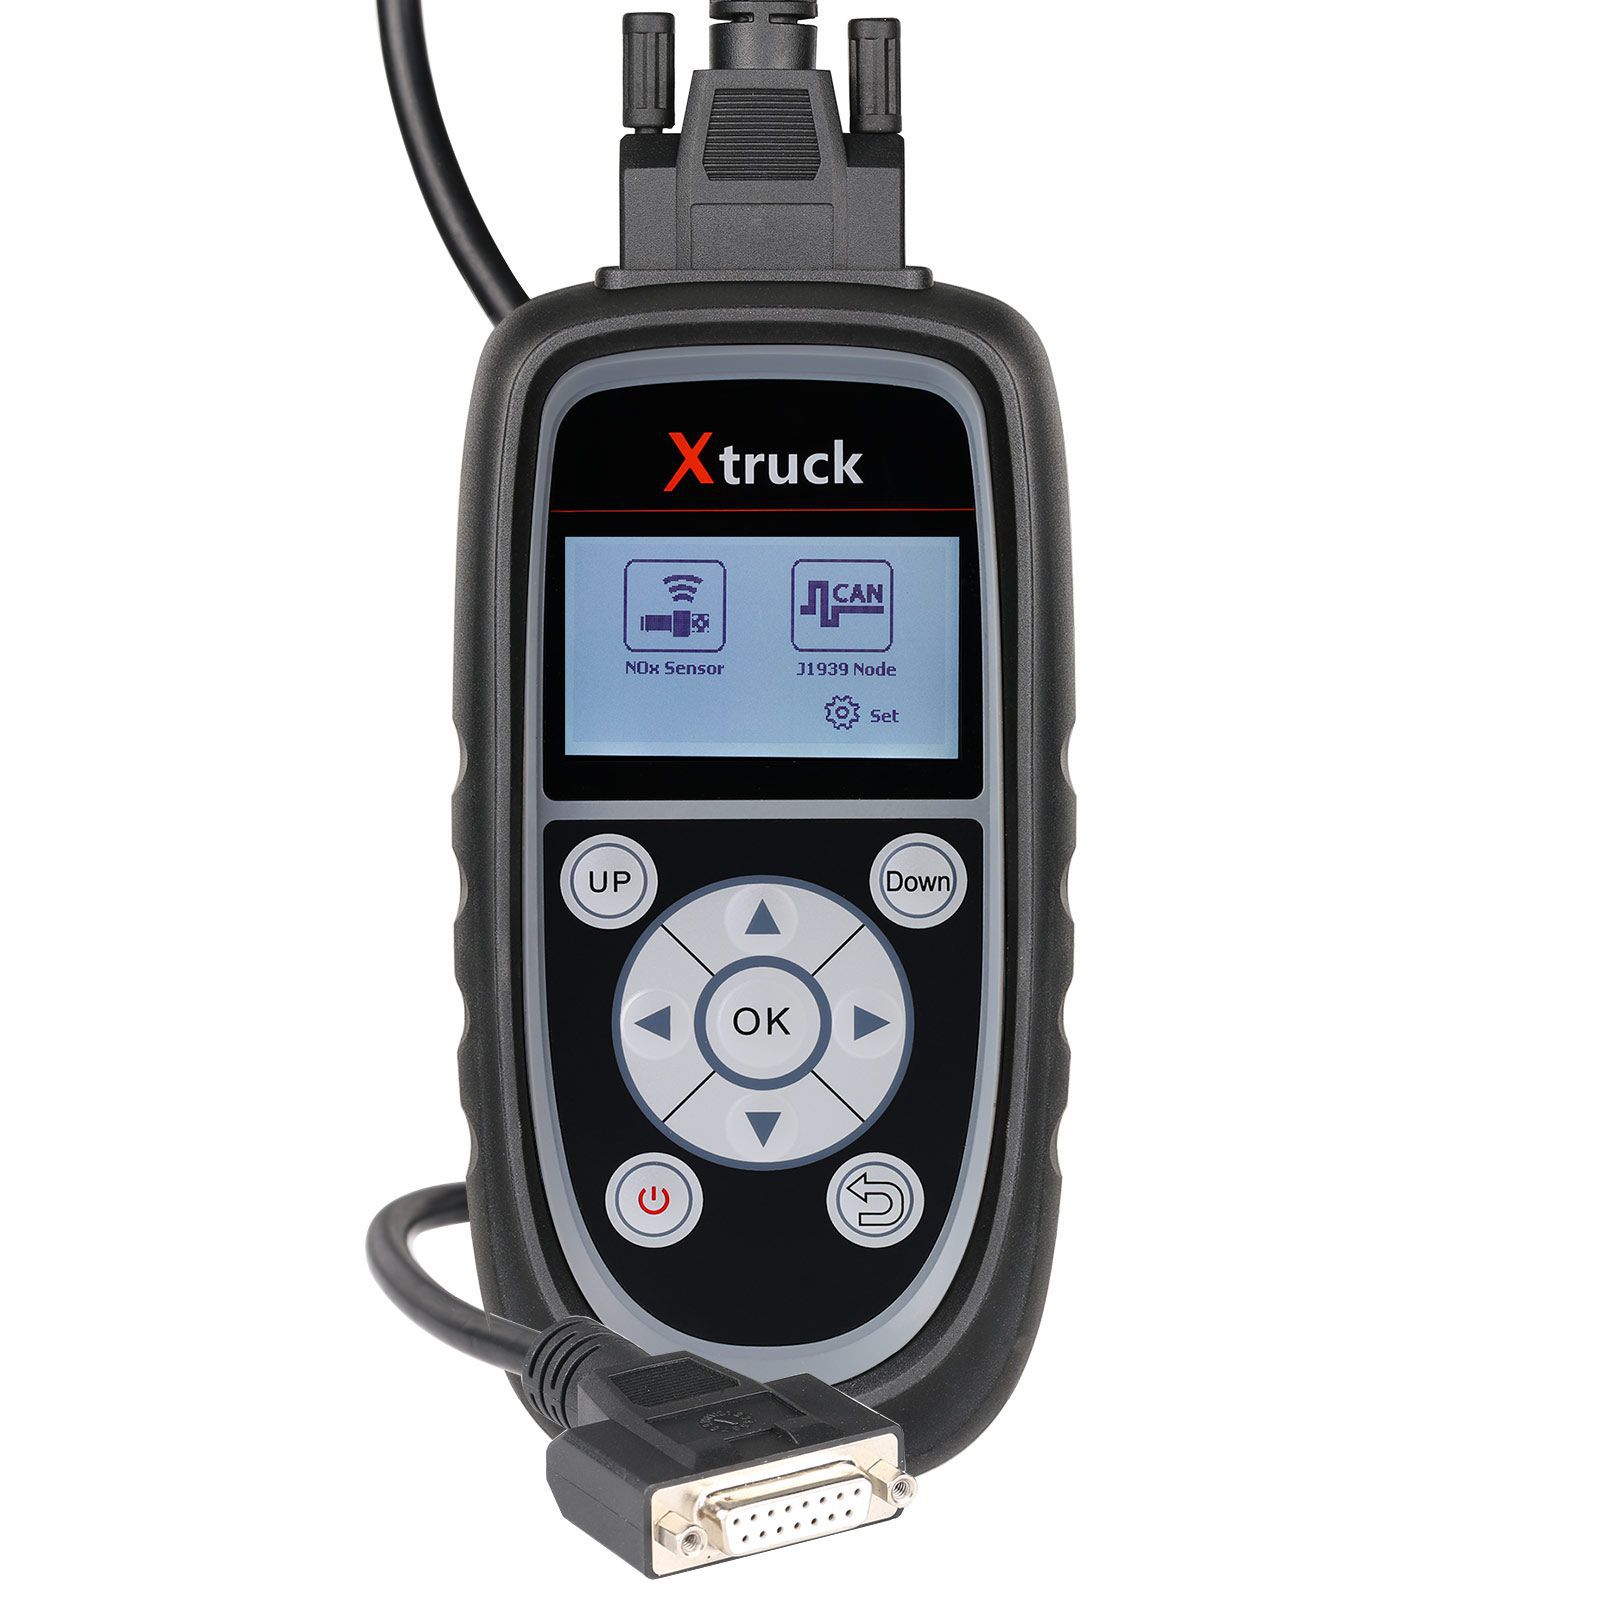 Xtruck y005 détecteur de capteur d'oxygène d'azote voiture balise machine urée pompe détecteur réparation automatique urée buse pompe outil de diagnostic